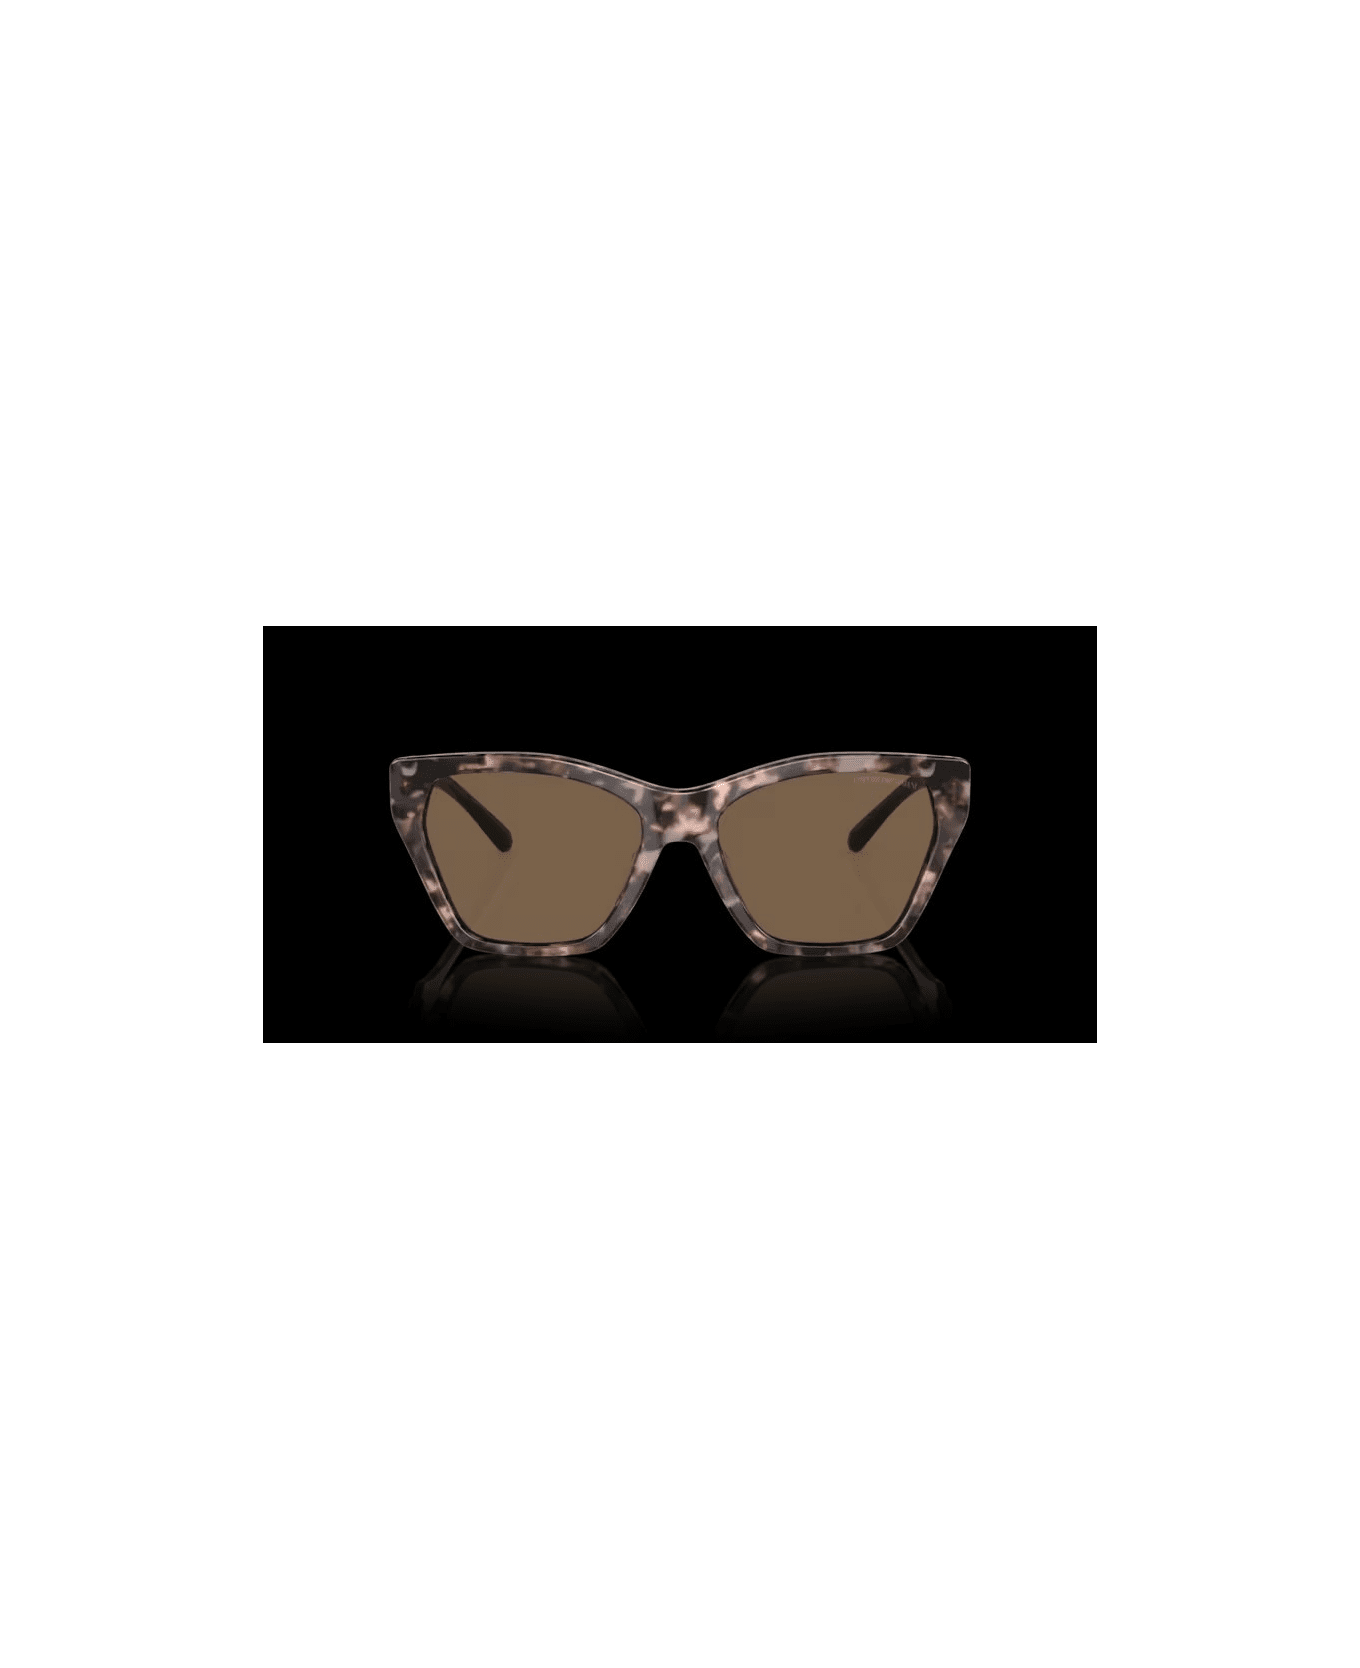 Emporio Armani EA 4203S 5410/73 Sunglasses - Tartarugato rosato サングラス